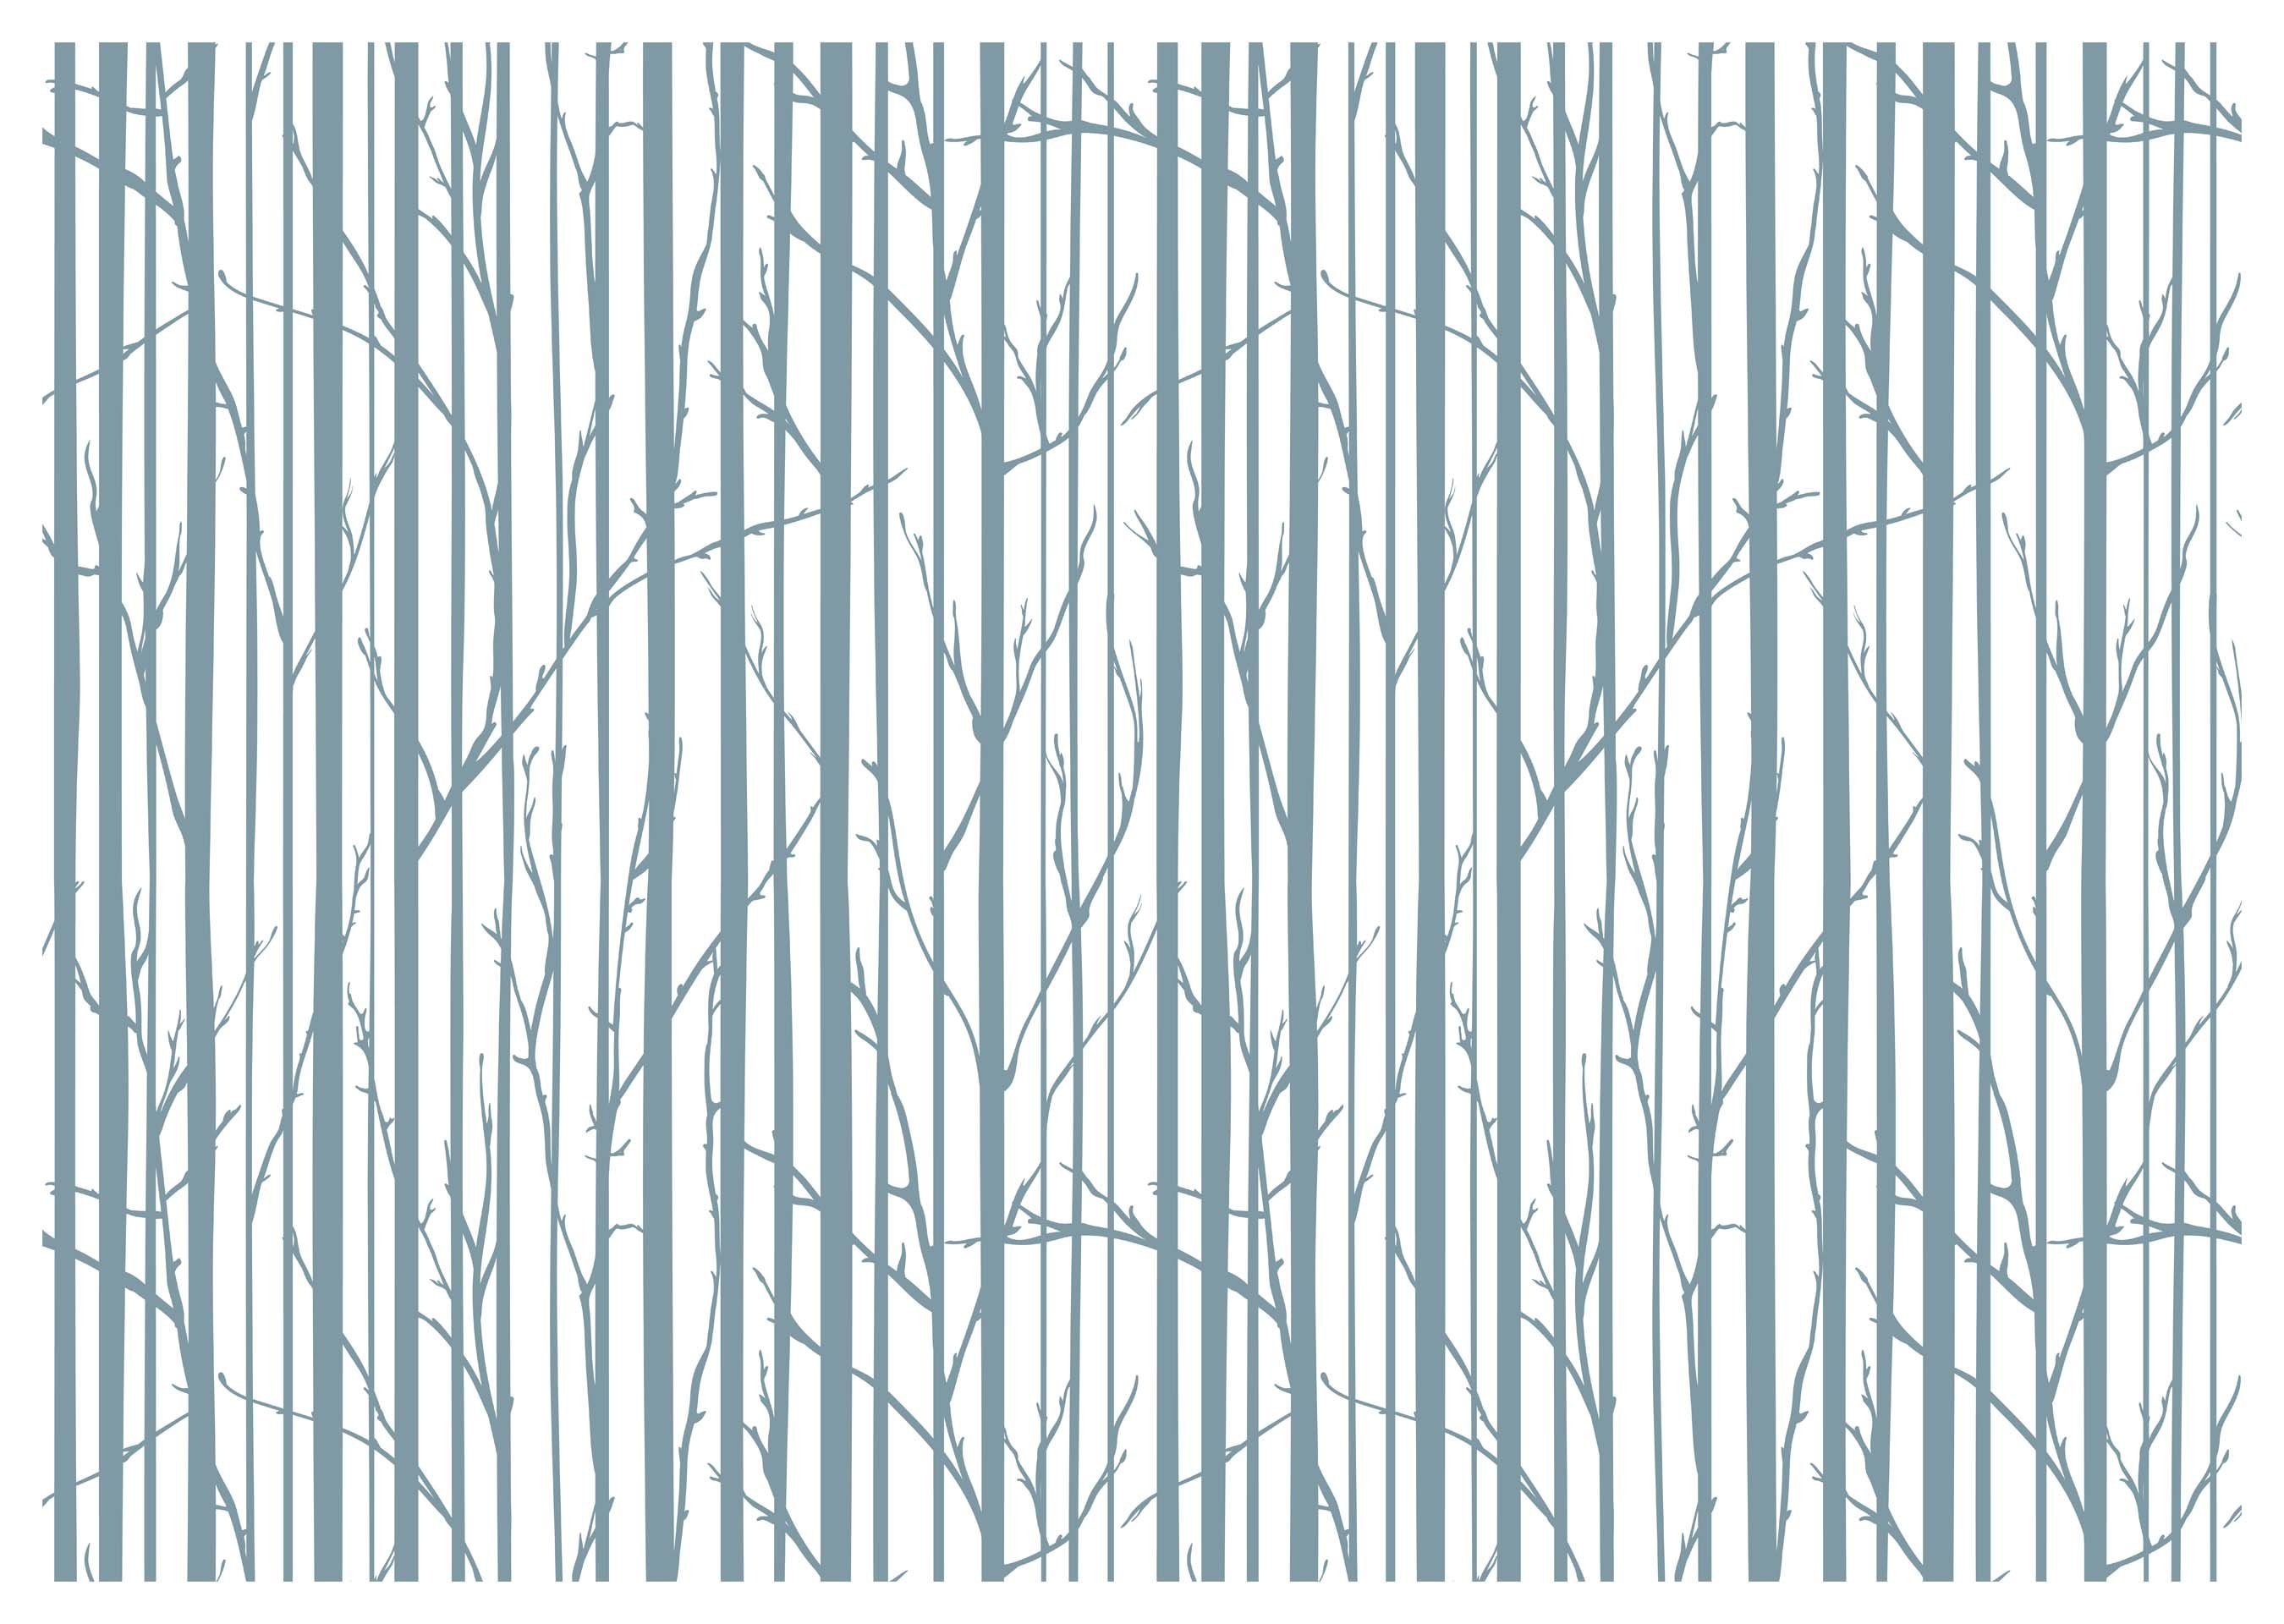 Vliestapete Bäume wandmotiv24 matt, minimalistisch, Wandtapete, Motivtapete, Fototapete glatt, Wald